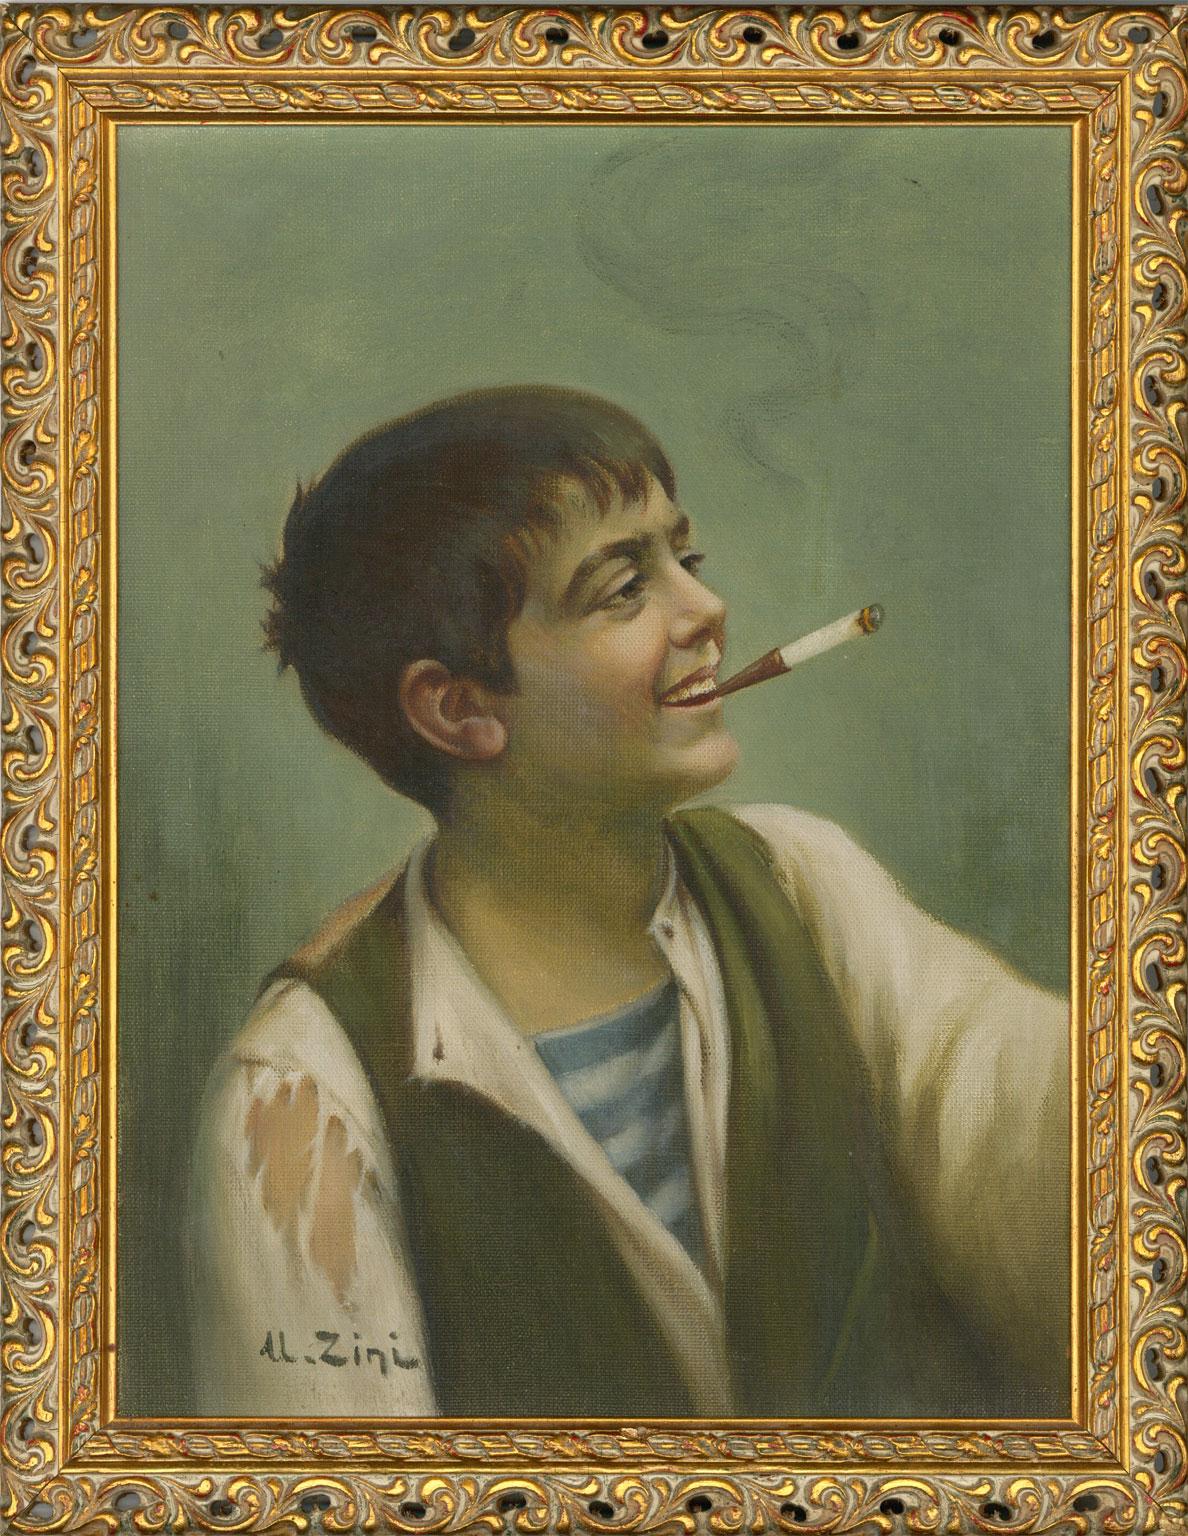 Un portrait à l'huile finement peint d'un jeune homme fumant une cigarette:: signé en bas à gauche « U. Zini ». L'artiste a peint un certain nombre de portraits similaires représentant de jeunes garçons ou gitanes fumant des cigarettes ou des pipes.